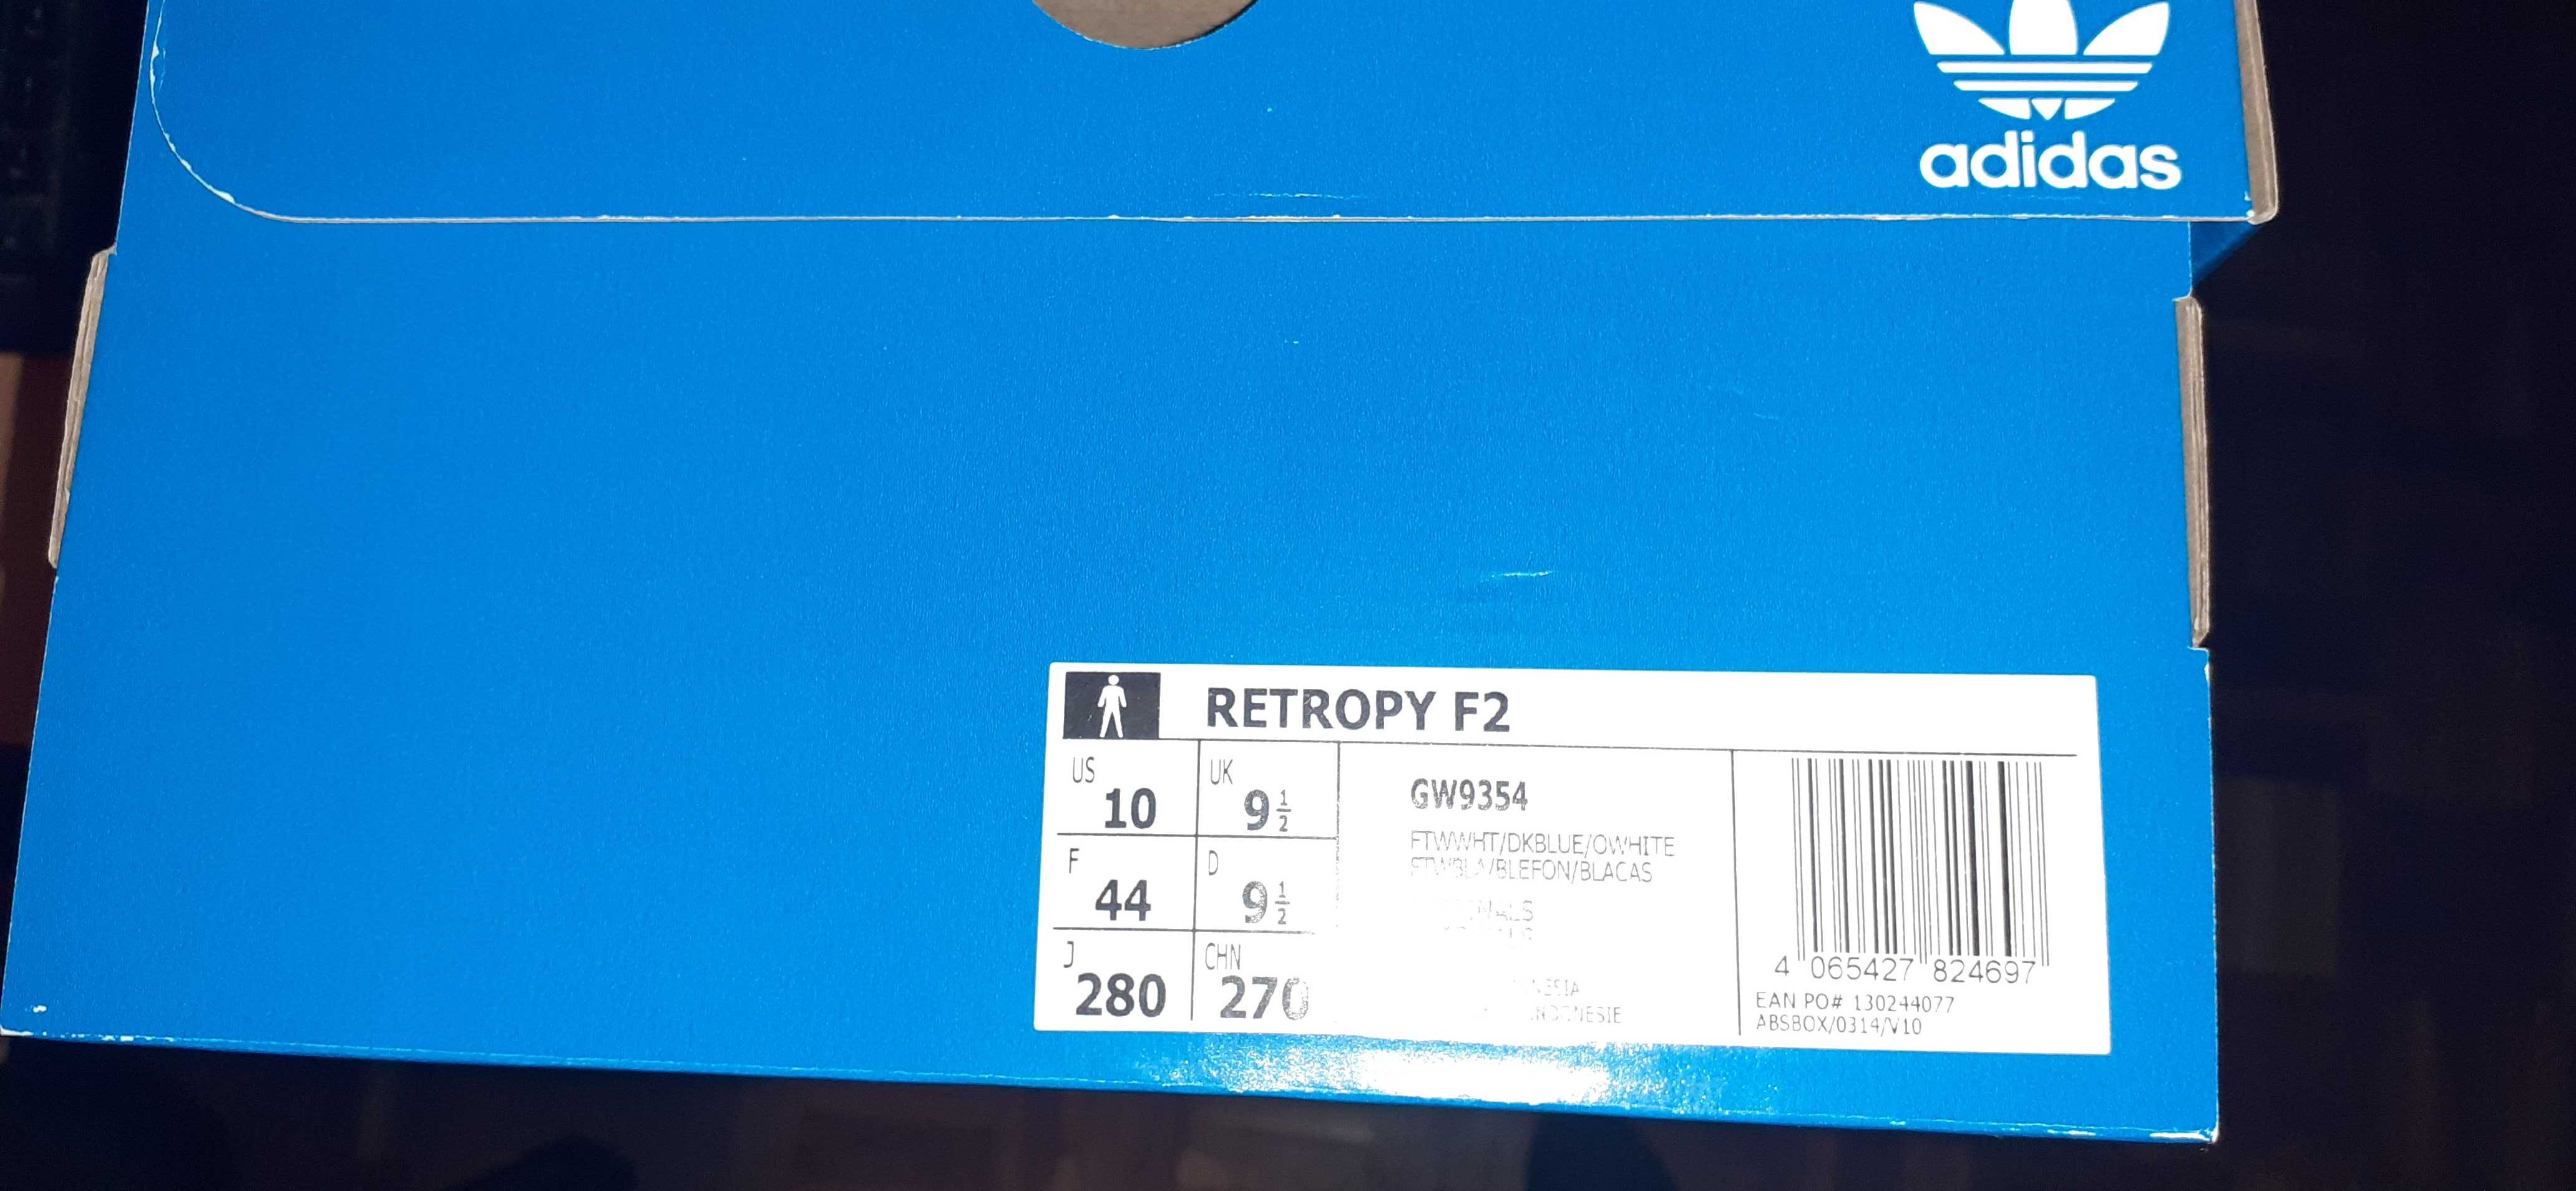 Sapatilhas Adidas - Retropy F2